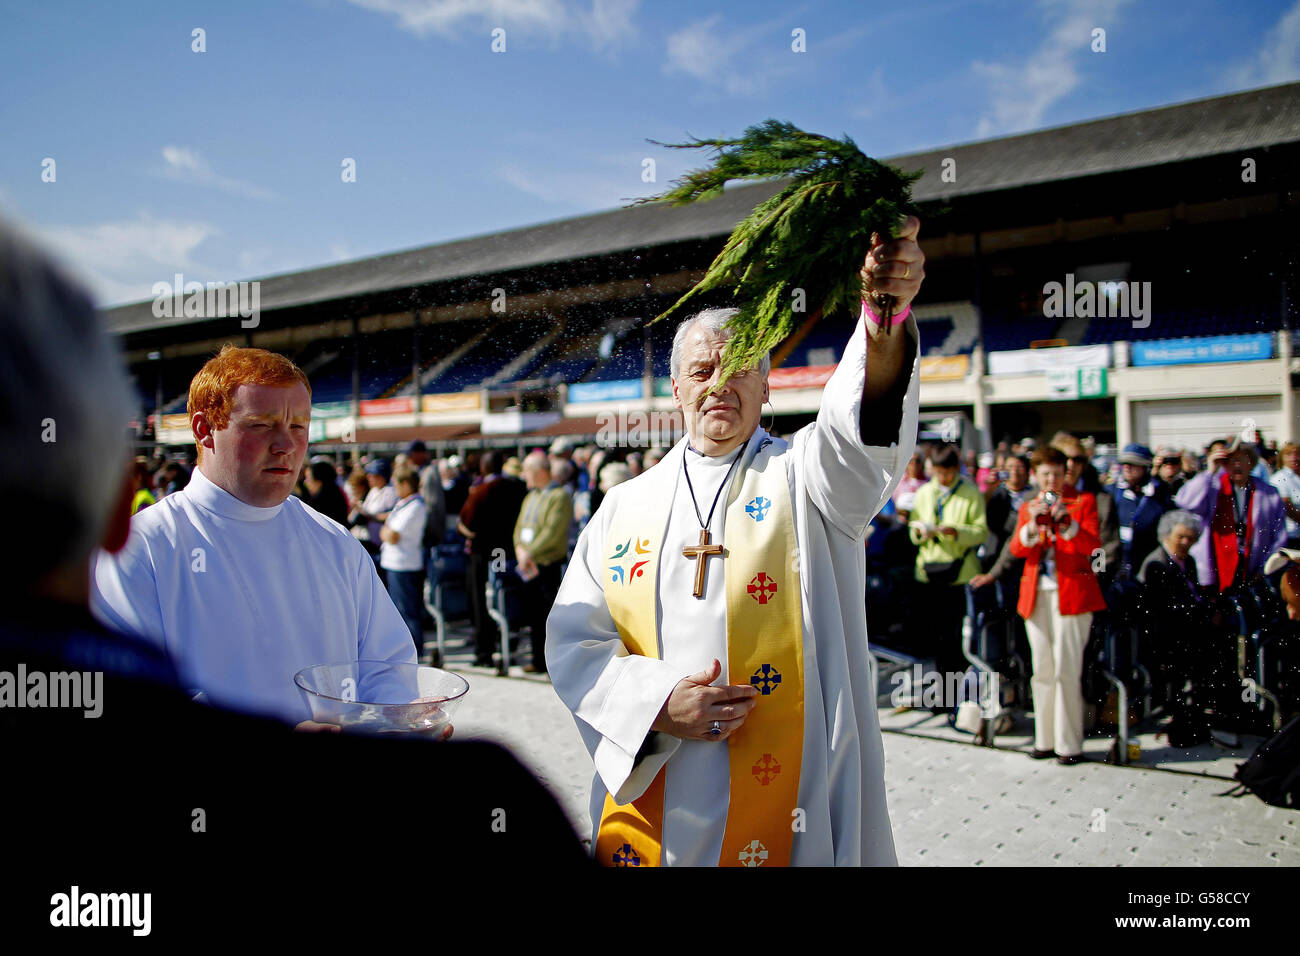 Church of Ireland der Erzbischof von Dublin Michael Jackson besprüht die Pilger während des 5. Eucharistischen Kongresses, der die ganze Woche im RDS in Dublin stattfindet, bei der Freiluftmesse in der Hauptarena mit heiligem Wasser. Stockfoto